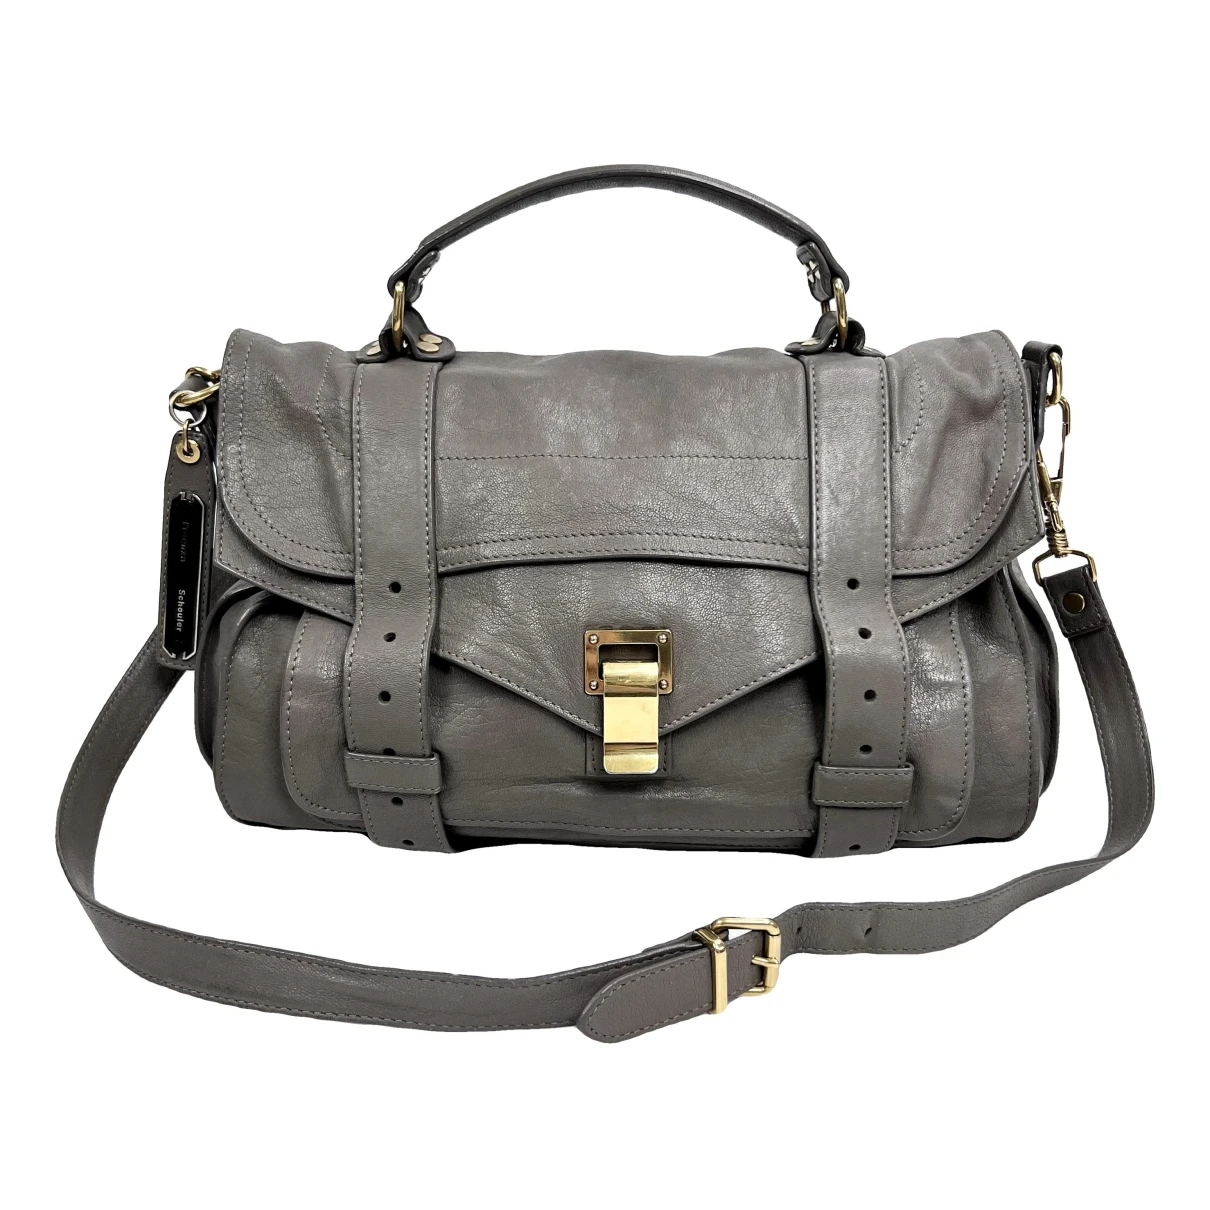 Pre-owned Proenza Schouler Ps1 Leather Handbag In Beige